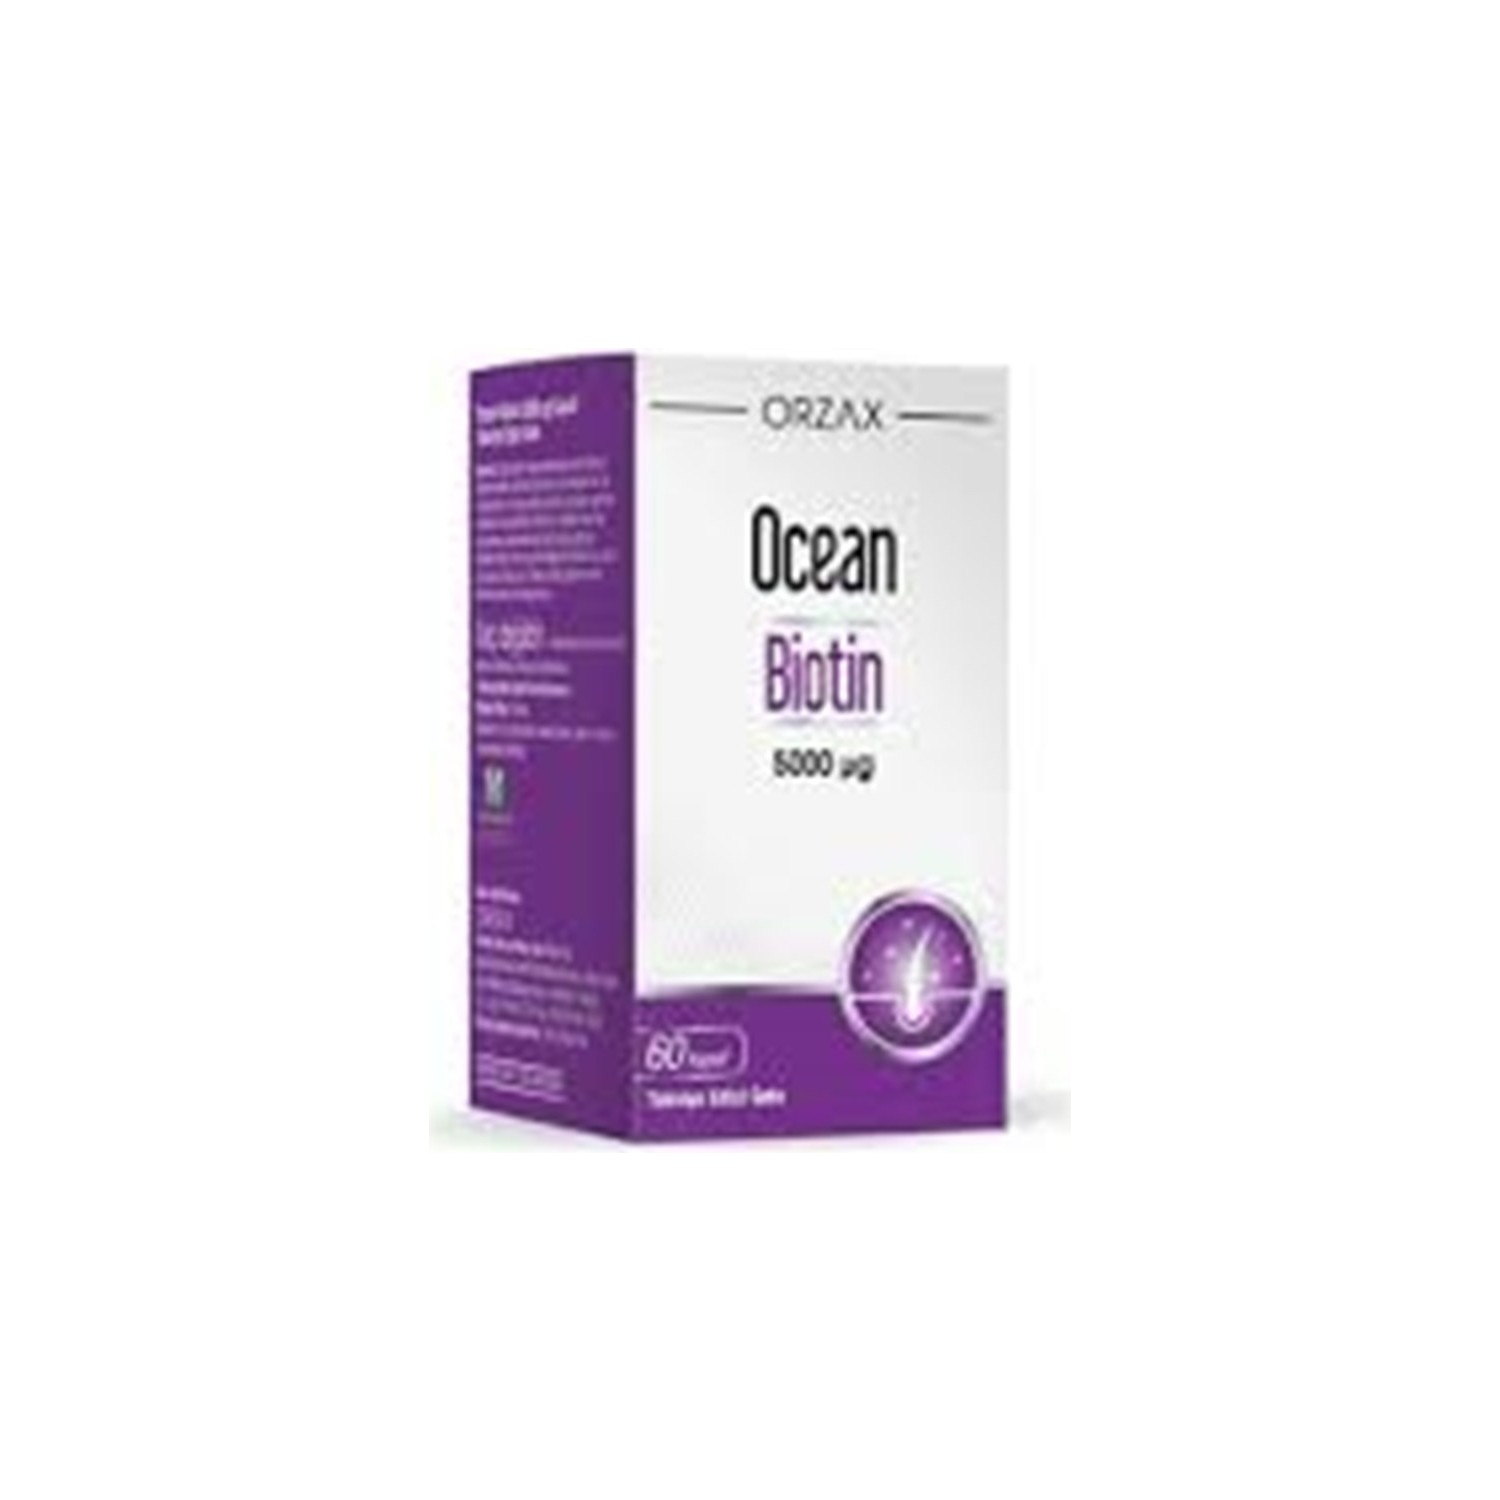 Пищевая добавка Ocean Biotin, 60 капсул 5000 мкг. пищевая добавка thp biotin plus zinc 60 капсул